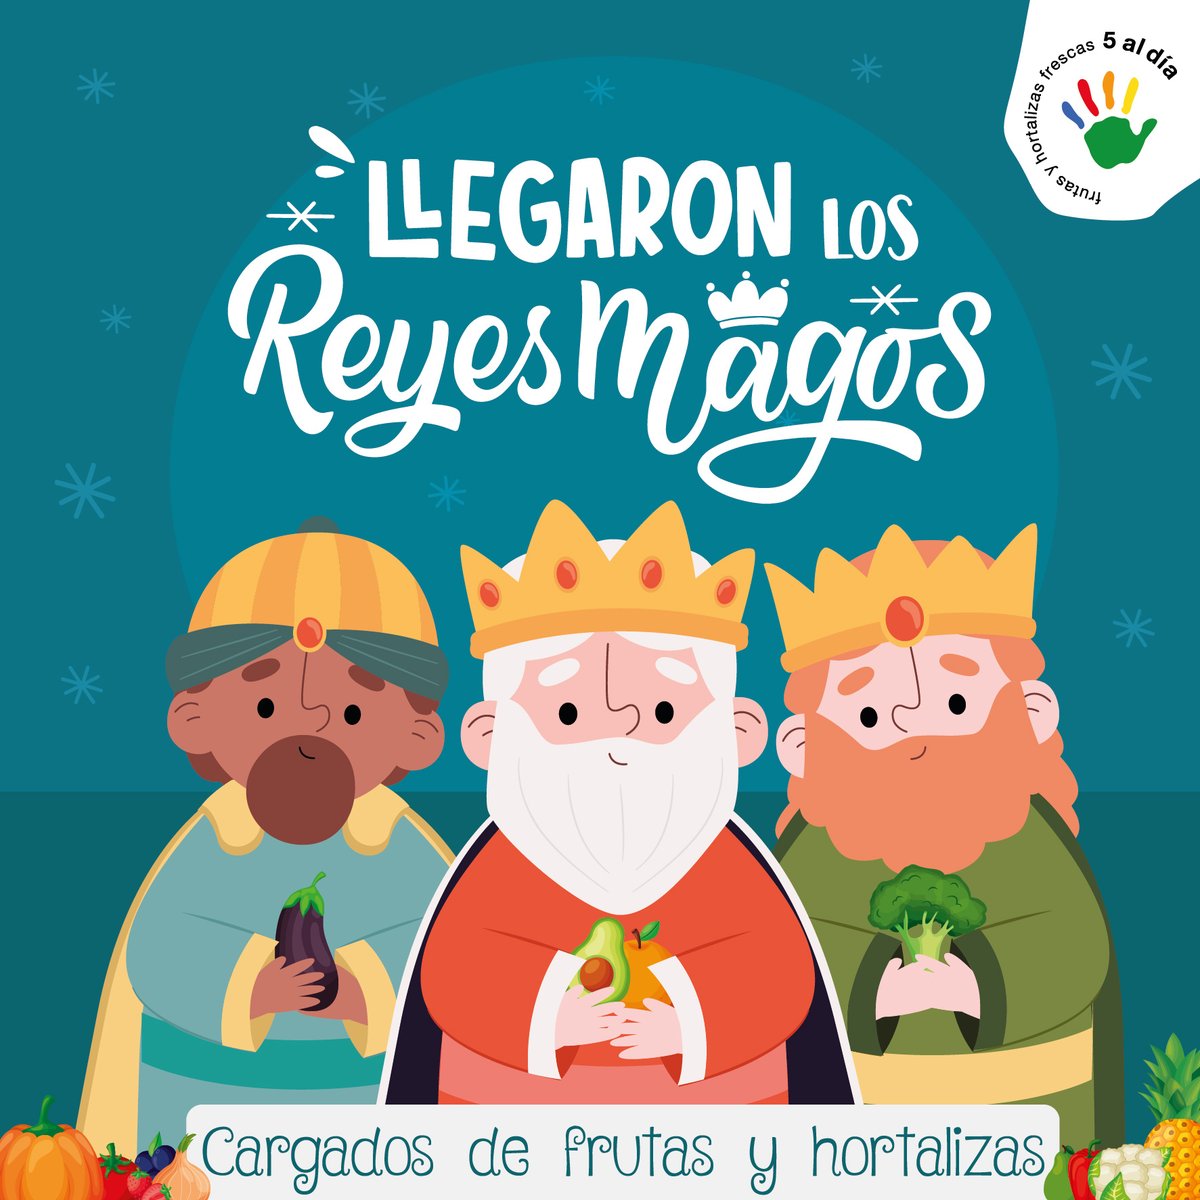 ¡Feliz Día de Reyes! 👑

Que la magia 🪄 de este día llene vuestras casas de ilusión, alegría y de #frutas y #hortalizas 🍇🍓🍆🧅🫑🍐

#DíaMágico #Practicael5enNavidad #Almenos5aldía